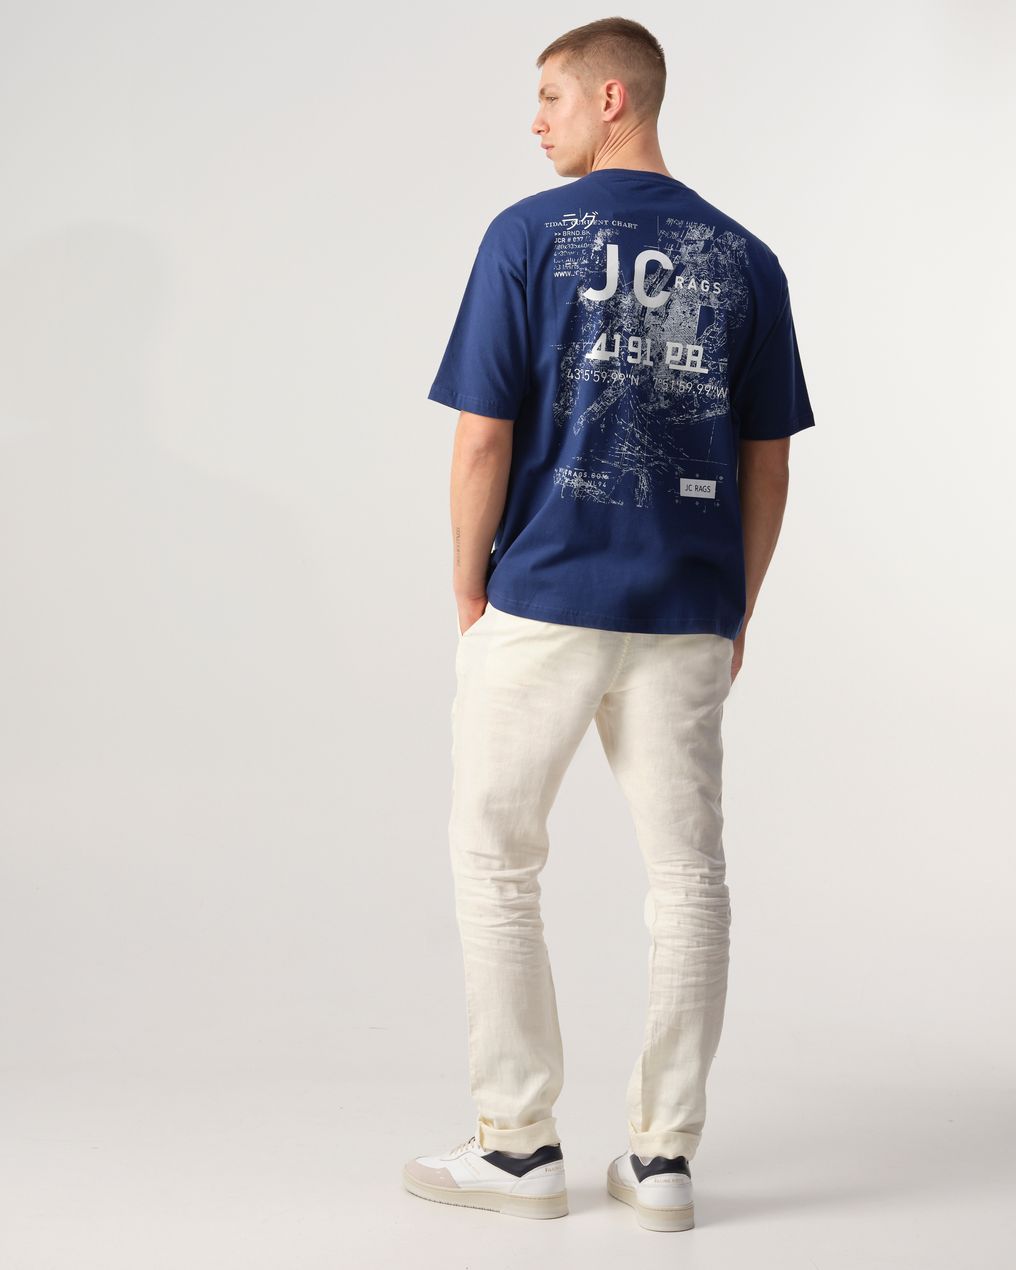 J.C. RAGS Thomas T-shirt KM